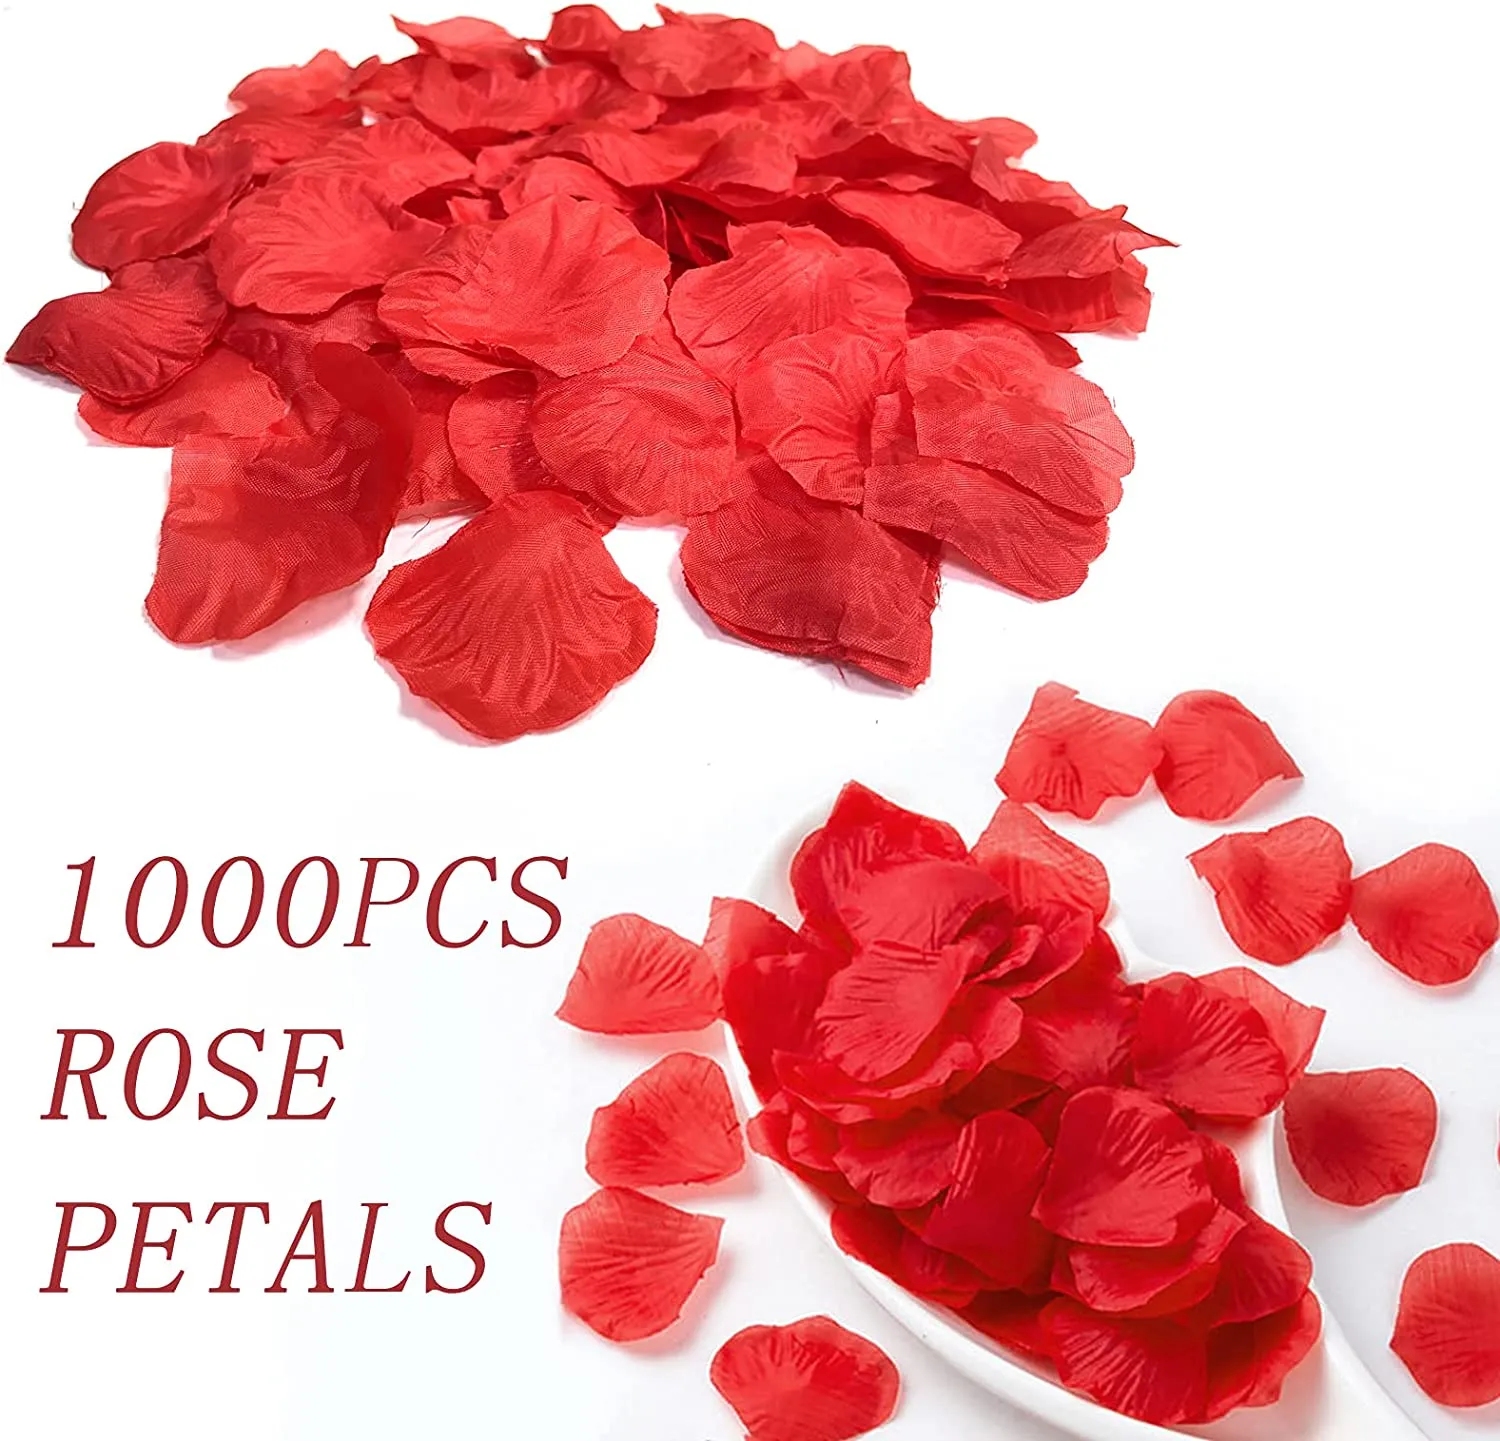 1000pcs / lot pétales de fleurs de rose en soie décoration de pétales de rose pour nuit romantique, mariage, événement, fête, décoration, fête de mariage